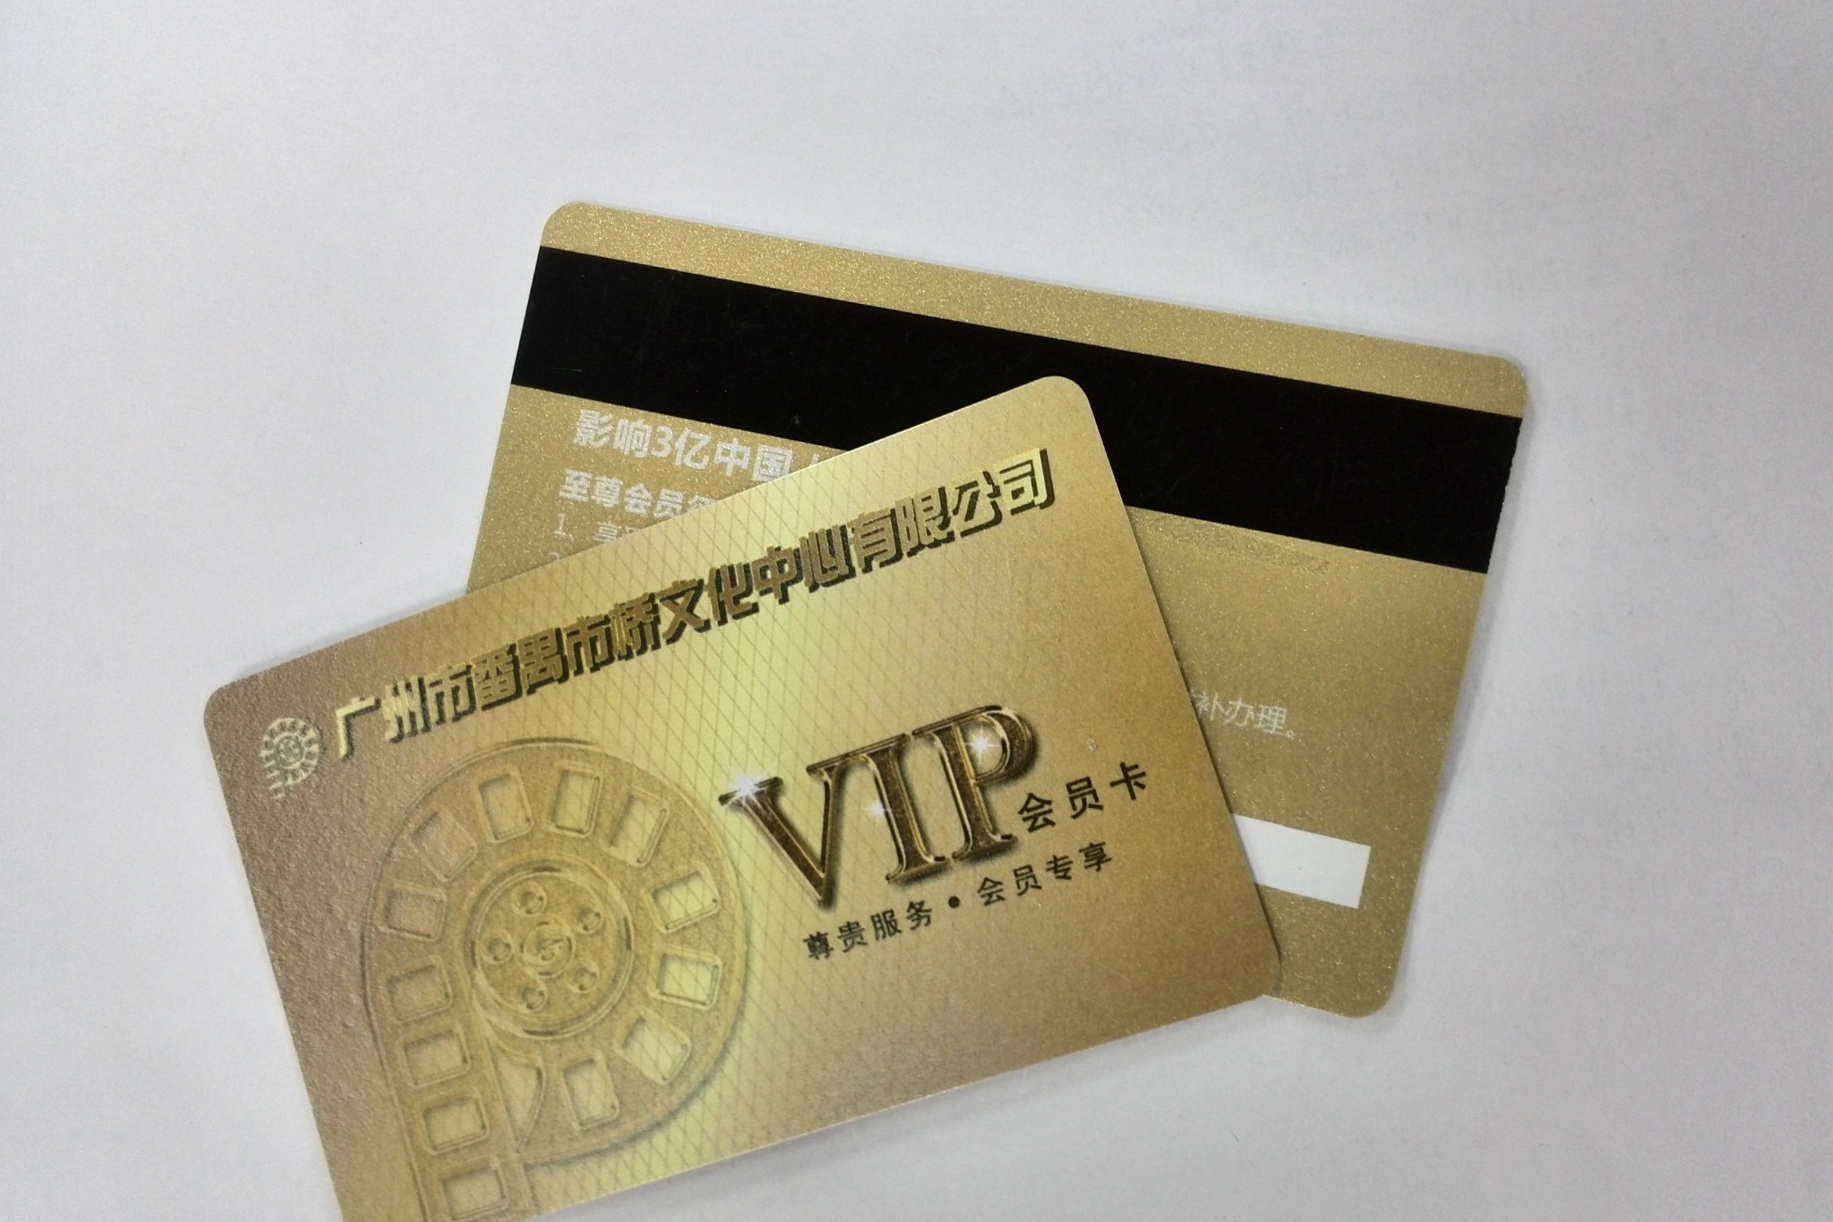 制作酒店餐饮店会员卡的供应商 深圳制作酒店餐饮店会员卡的供应商图片